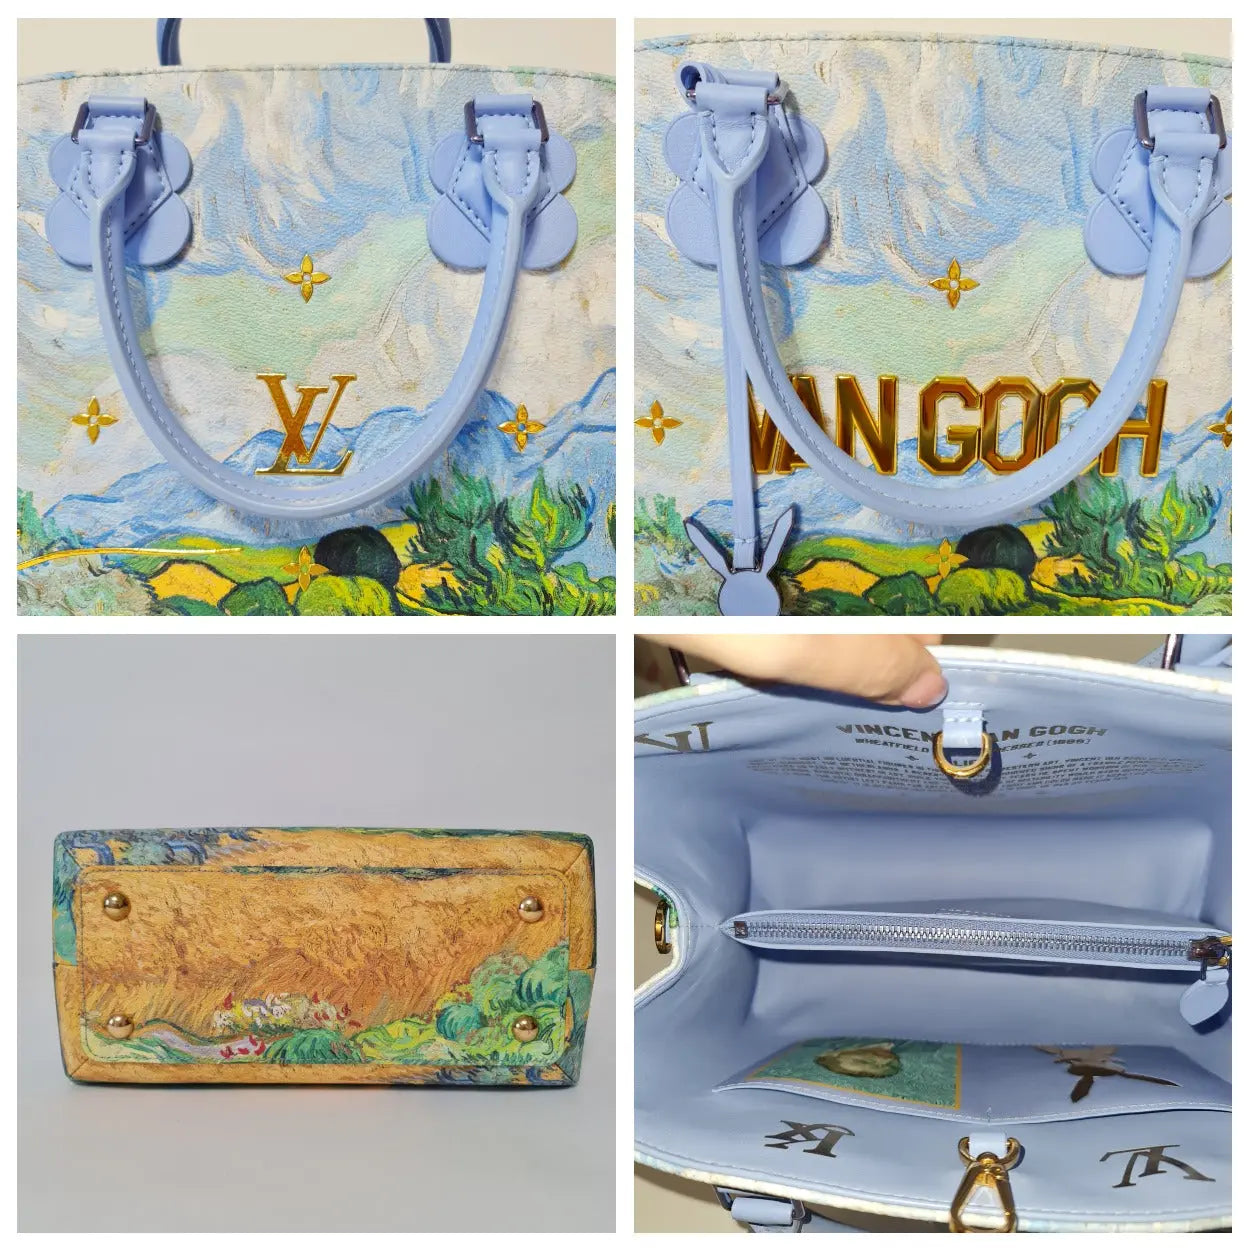 Louis Vuitton Multicolor Leather Montaigne MM Van Gogh Bag Louis Vuitton